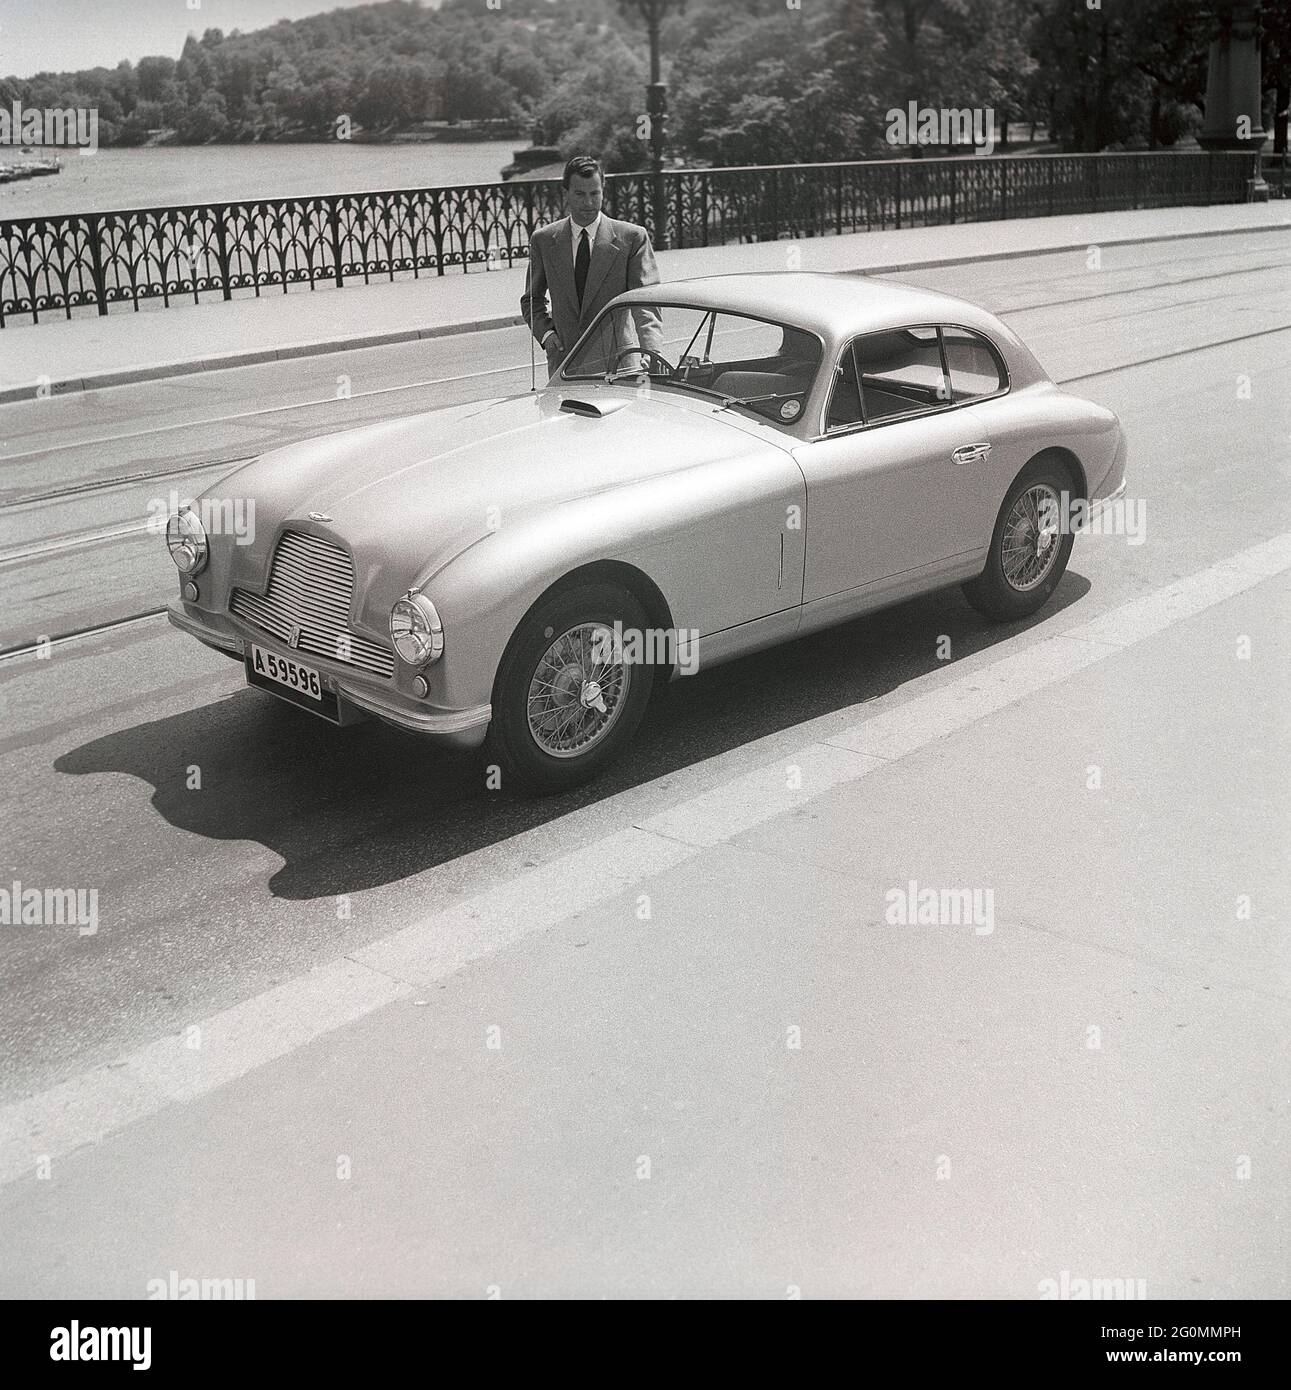 Fahren in den 1950er Jahren. Ein Mann neben seinem Auto, ein Aston Martin DB2. Dieses Modell wurde 1950 vorgestellt und in 411 Fahrzeugen produziert. Er hatte einen Sechszylindermotor, vier Gänge und einen von Frank Feeley entworfenen Chassi. Schweden 1953. ref. BL108-9 Stockfoto